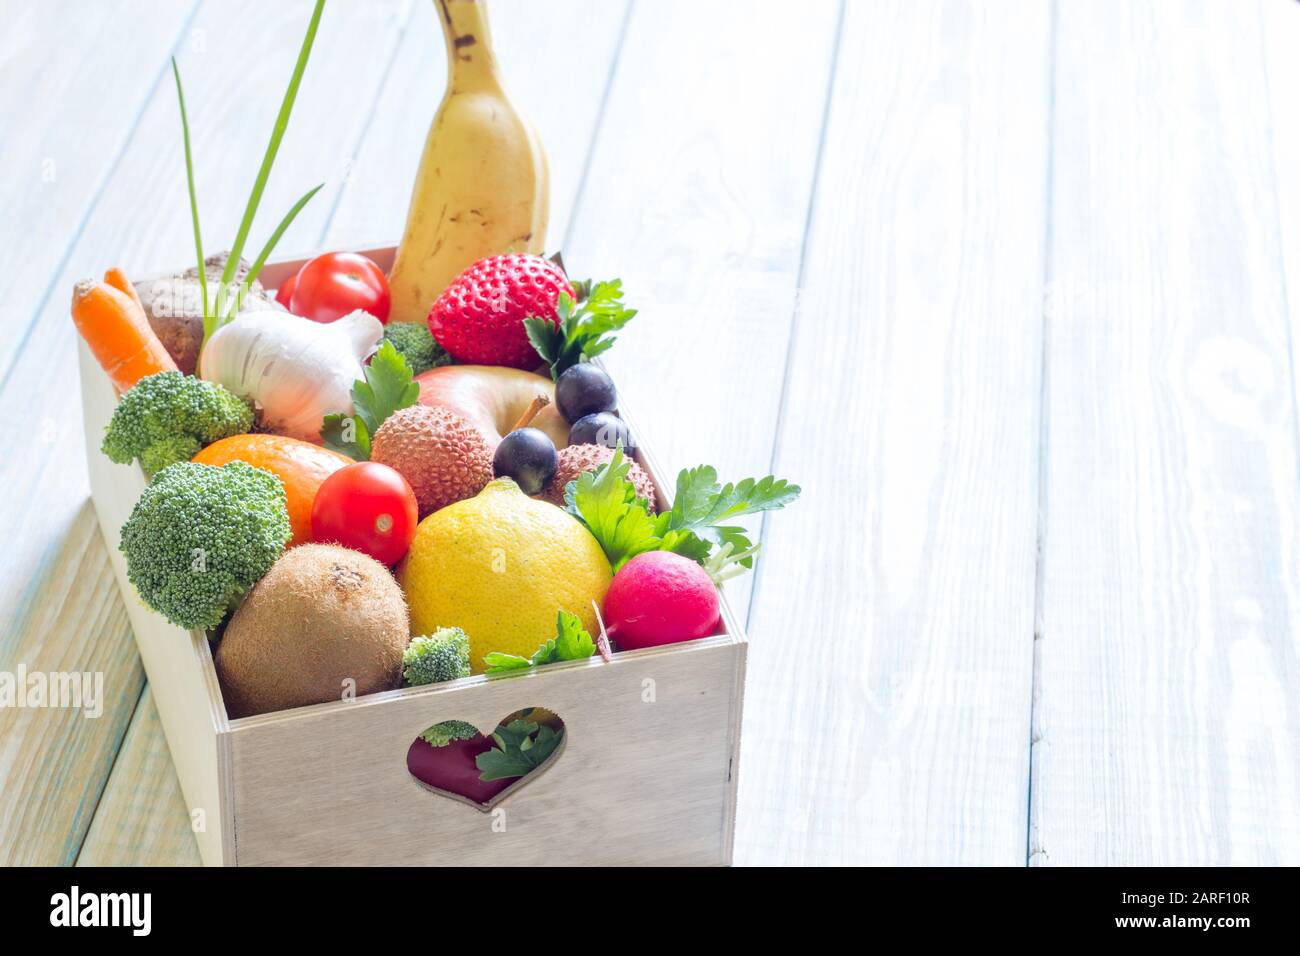 Dieta sana di concetto di lifestyle e nutrizione con gli alimenti della frutta e delle verdure nel cuore della scatola Foto Stock